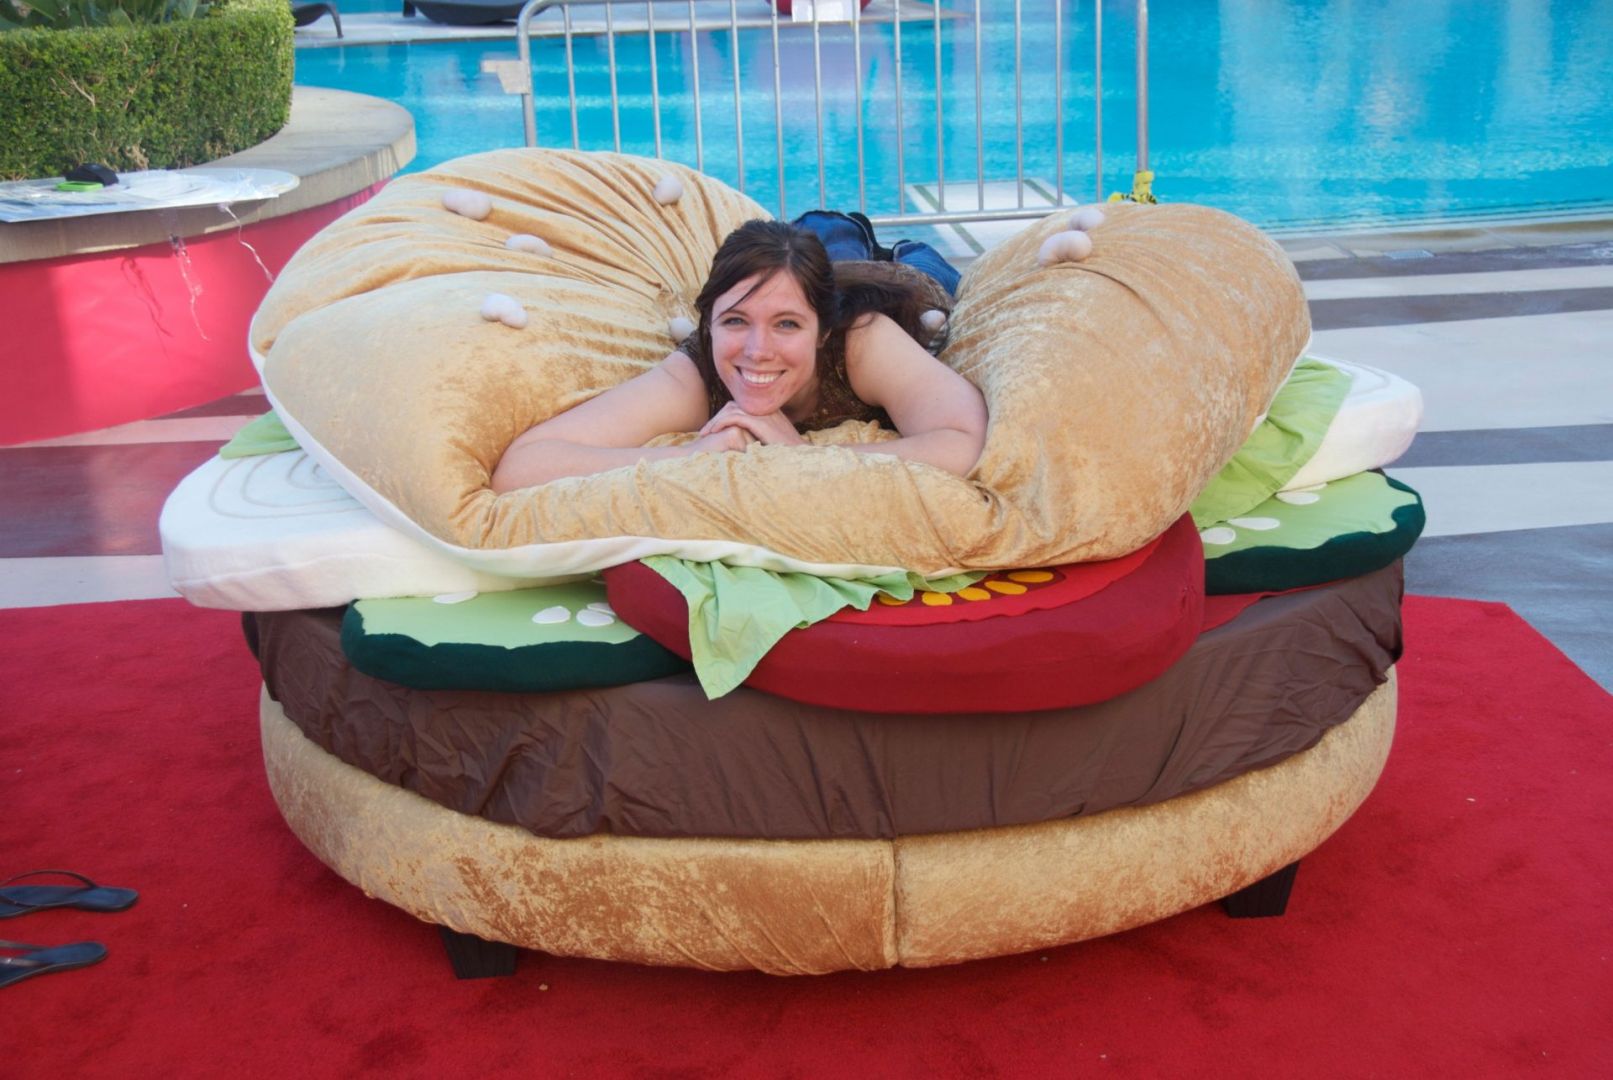 Hamburger bed to nietypowe łóżko dla łakomczuchów, ale i nie tylko. Można się w nim schować, przykrywając się górną częścią bułki. Fot. Neil Miller, Kayla Kromer